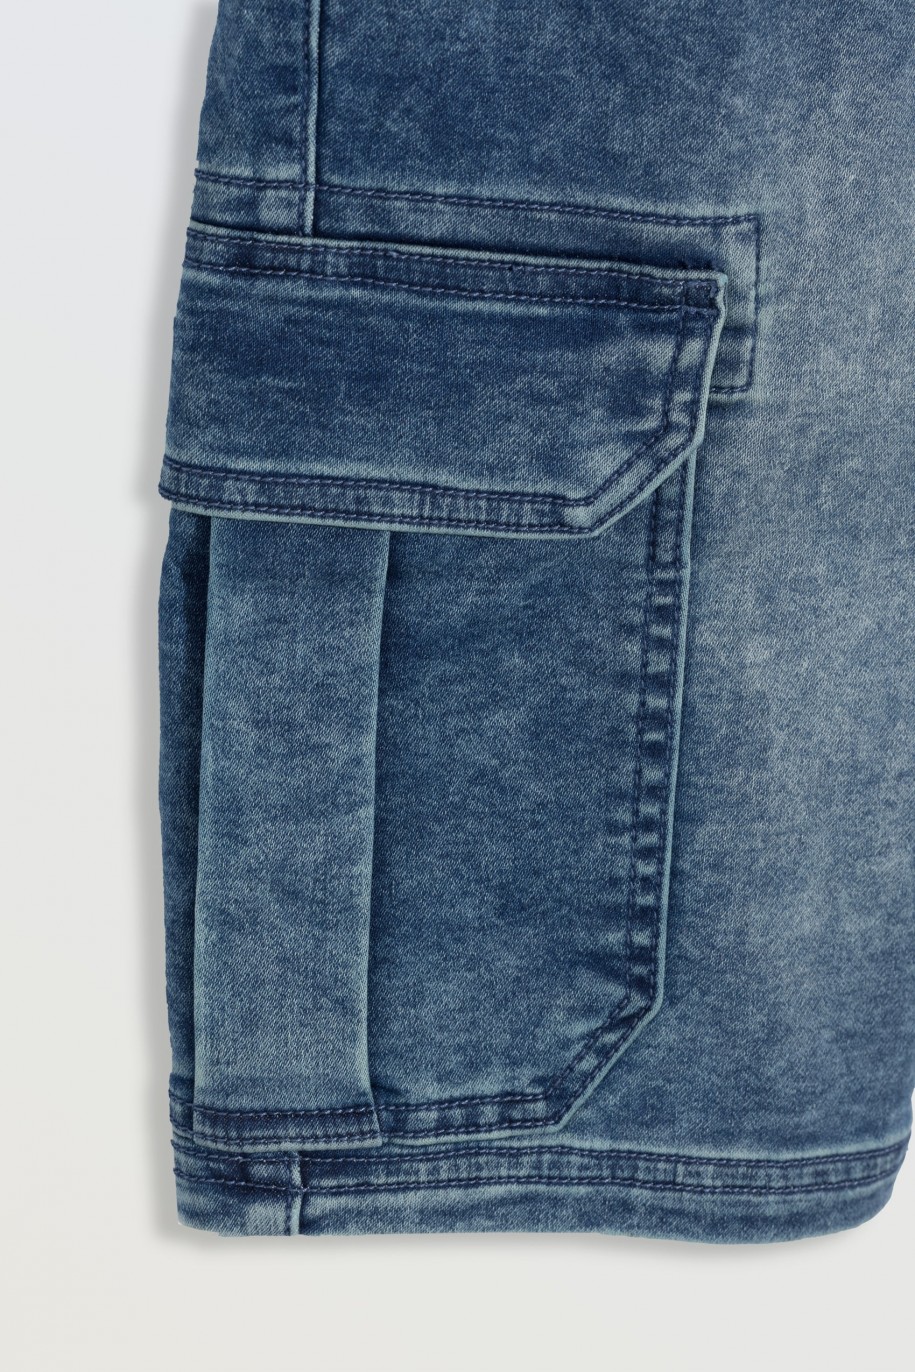 Niebieskie krótkie spodenki jeansowe z przestrzennymi kieszeniami - 46781